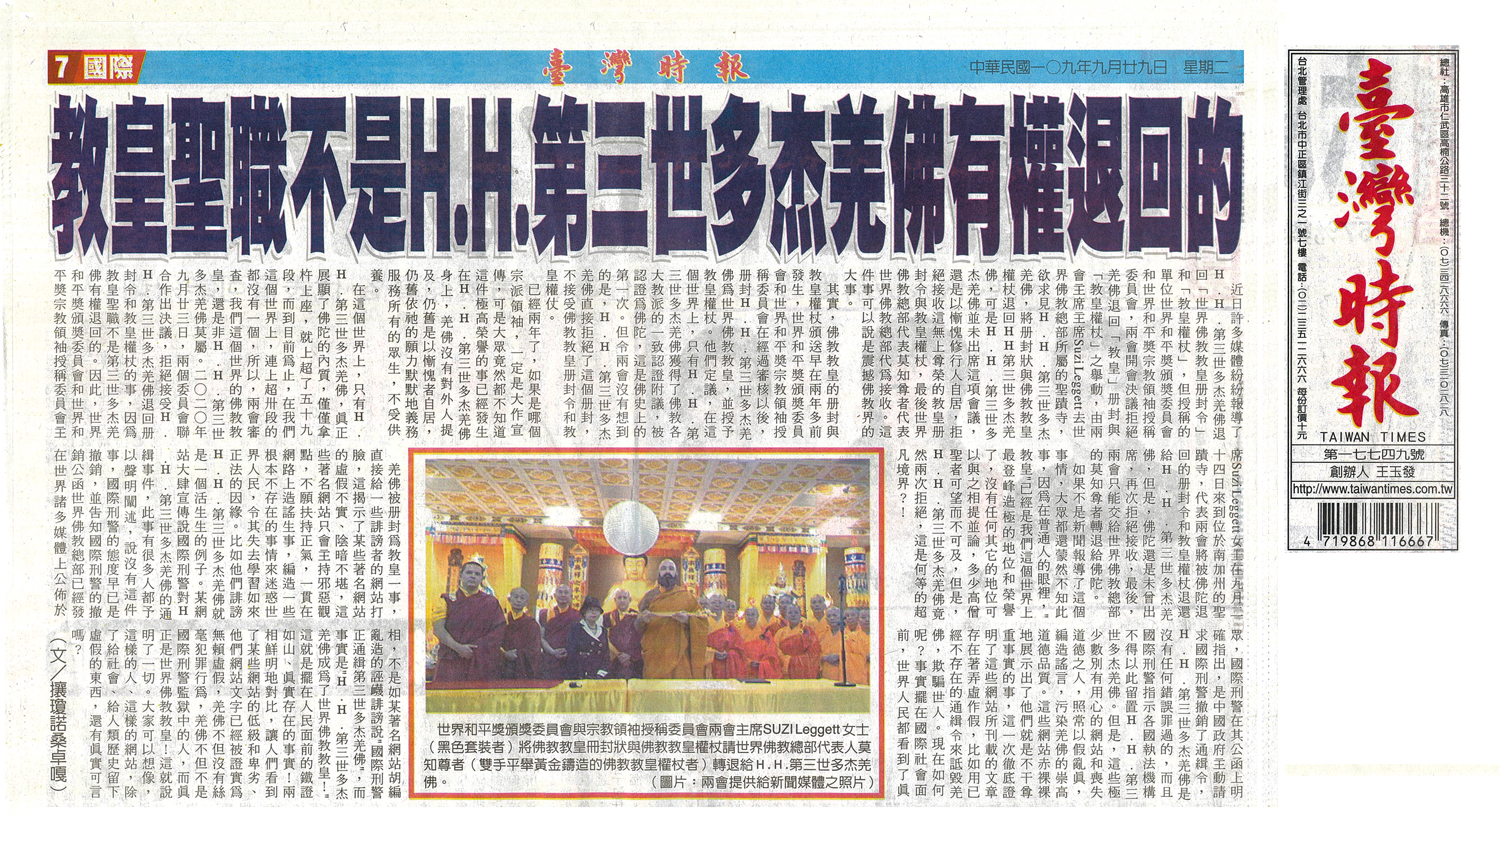 台灣時報 教皇聖職不是H.H.第三世多杰羌佛有權退回的_9-29-2020